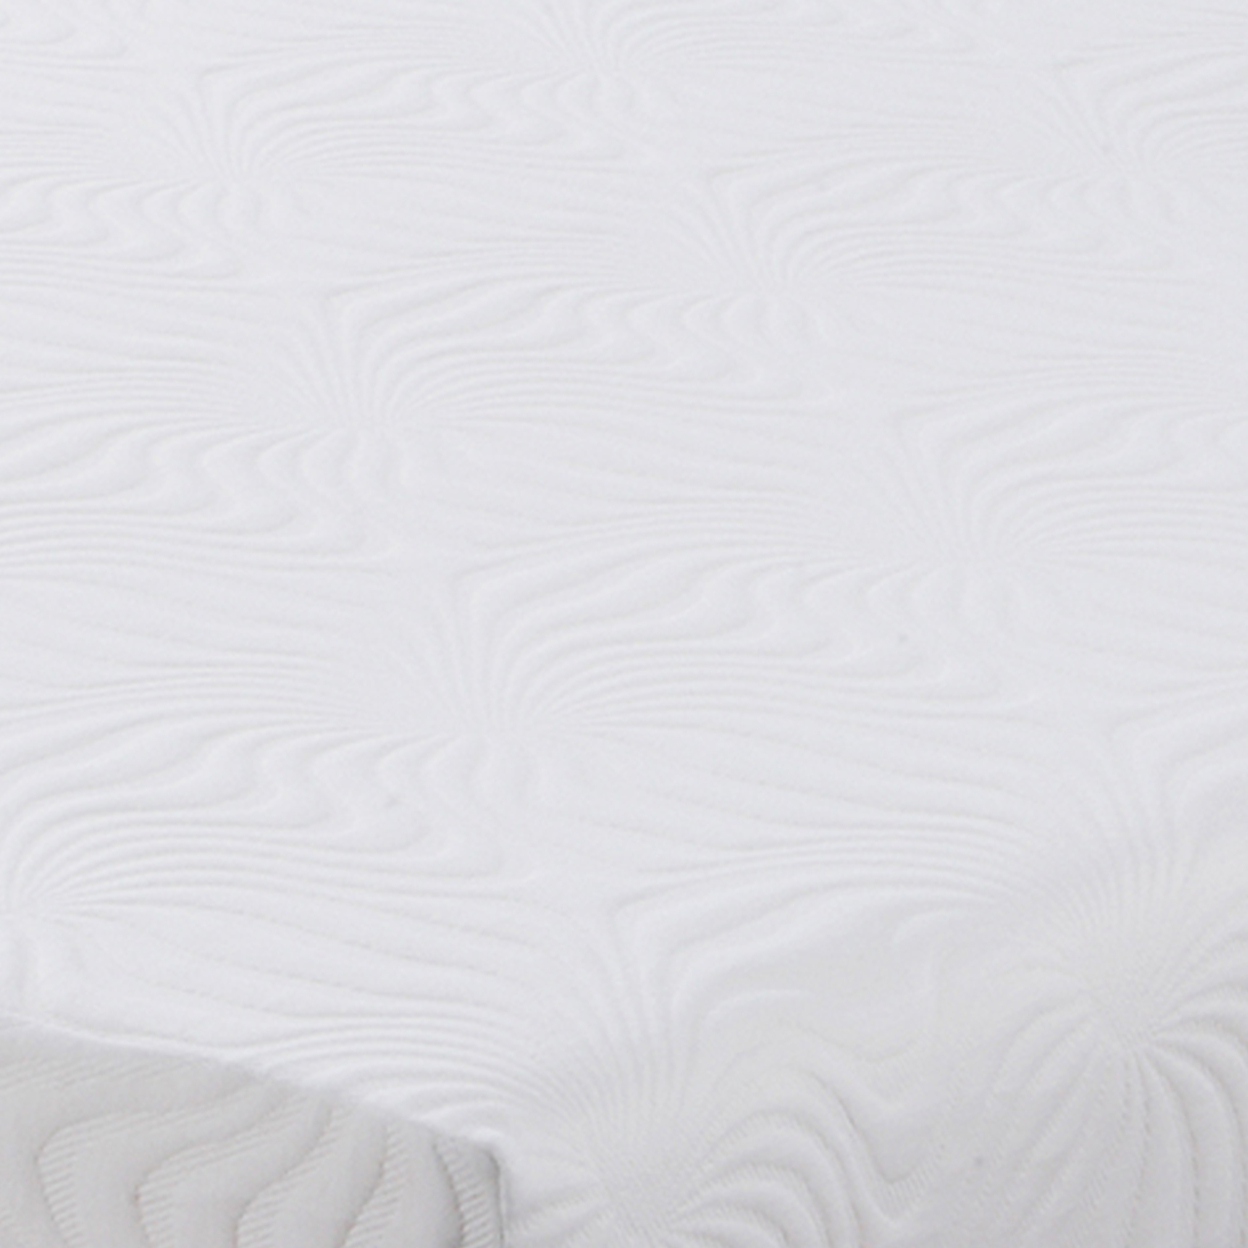 Twin XL Size Mattress With Patterned Fabric Upholstery, White- Saltoro Sherpi